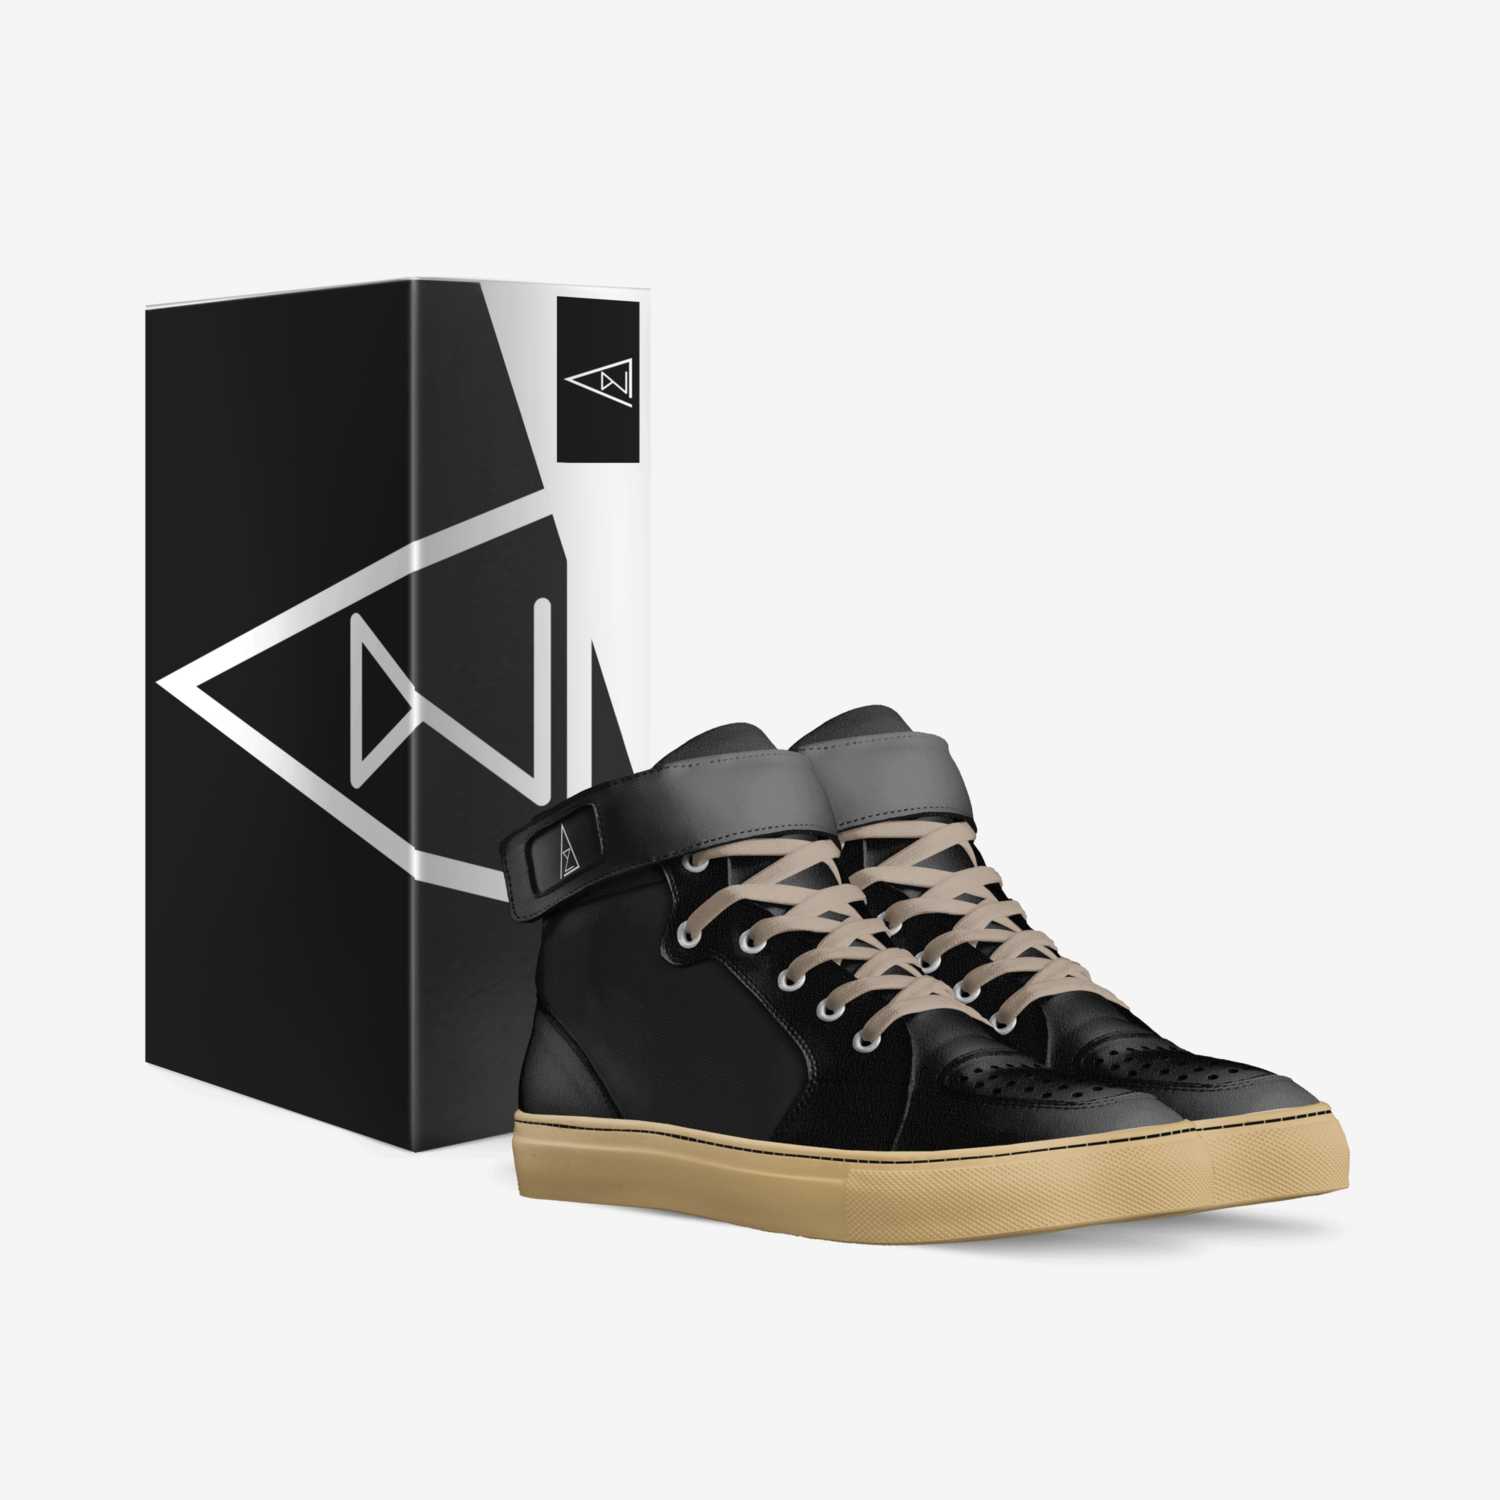 AZ custom made in Italy shoes by Sheldon Az | Box view